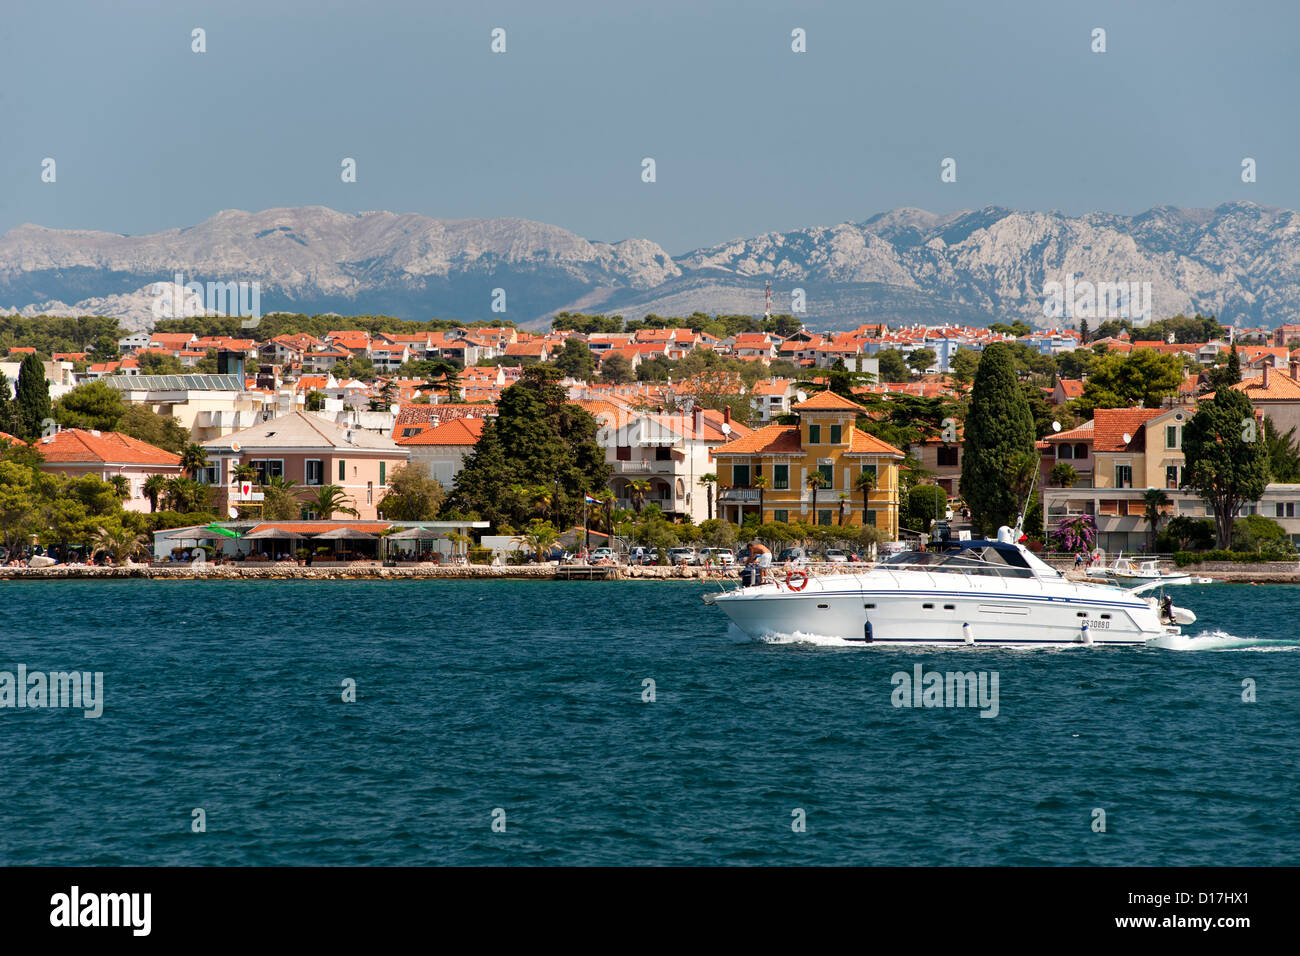 Vista de la costa cerca de la ciudad de Zadar en la costa adriática de Croacia. Foto de stock